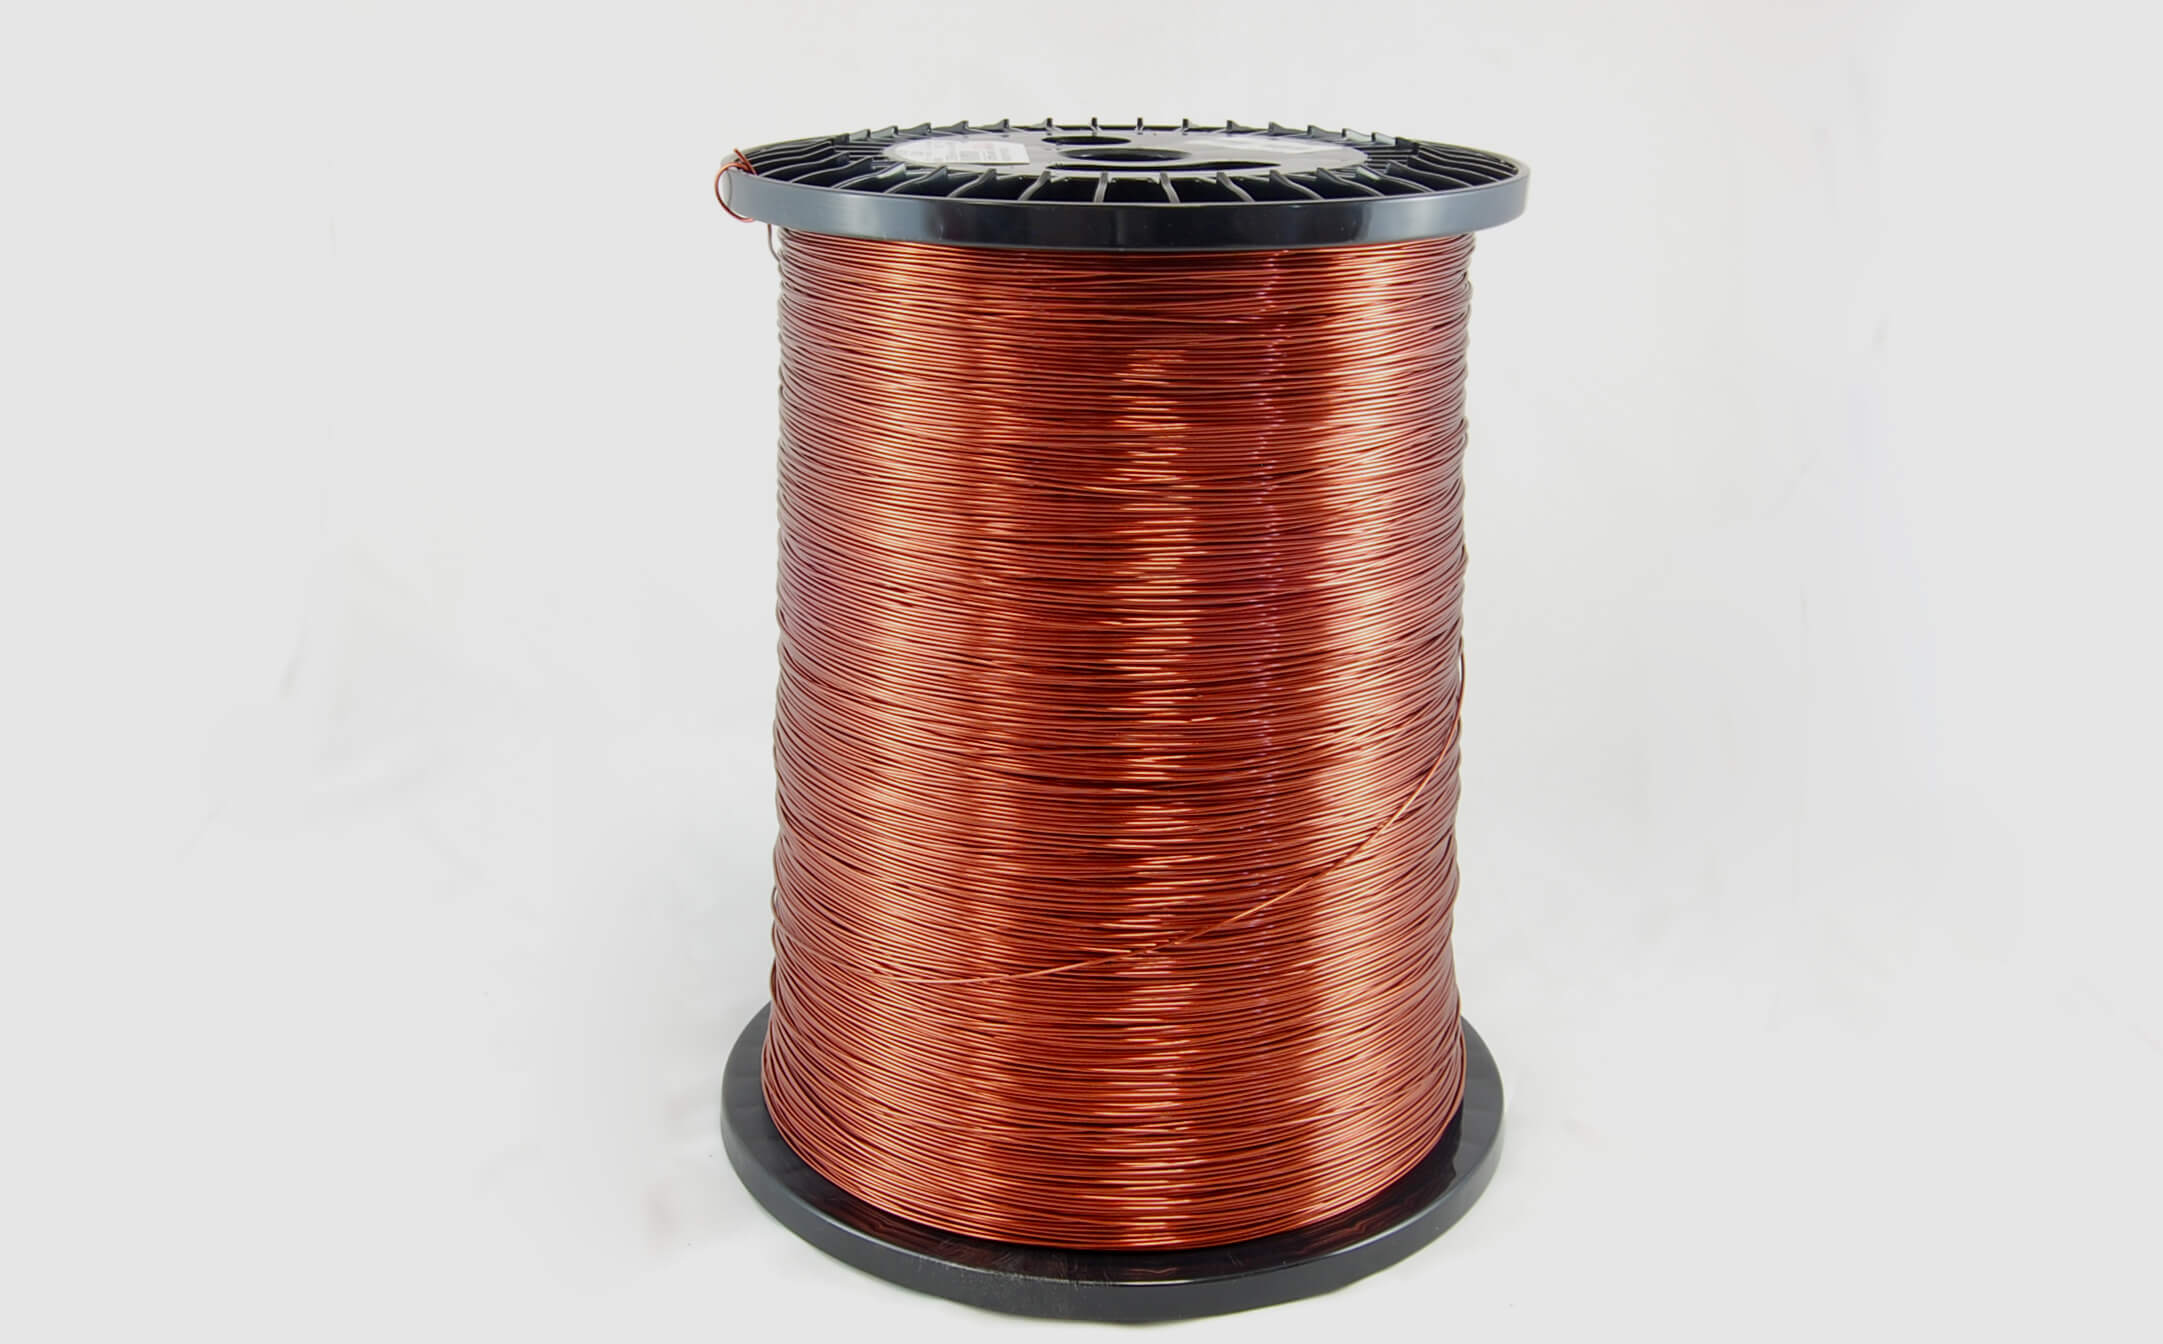 #25 Heavy Super Hyslik 200 Round HTAIH MW 35 Copper Magnet Wire 200°C, copper, 85 LB pail (average wght.)